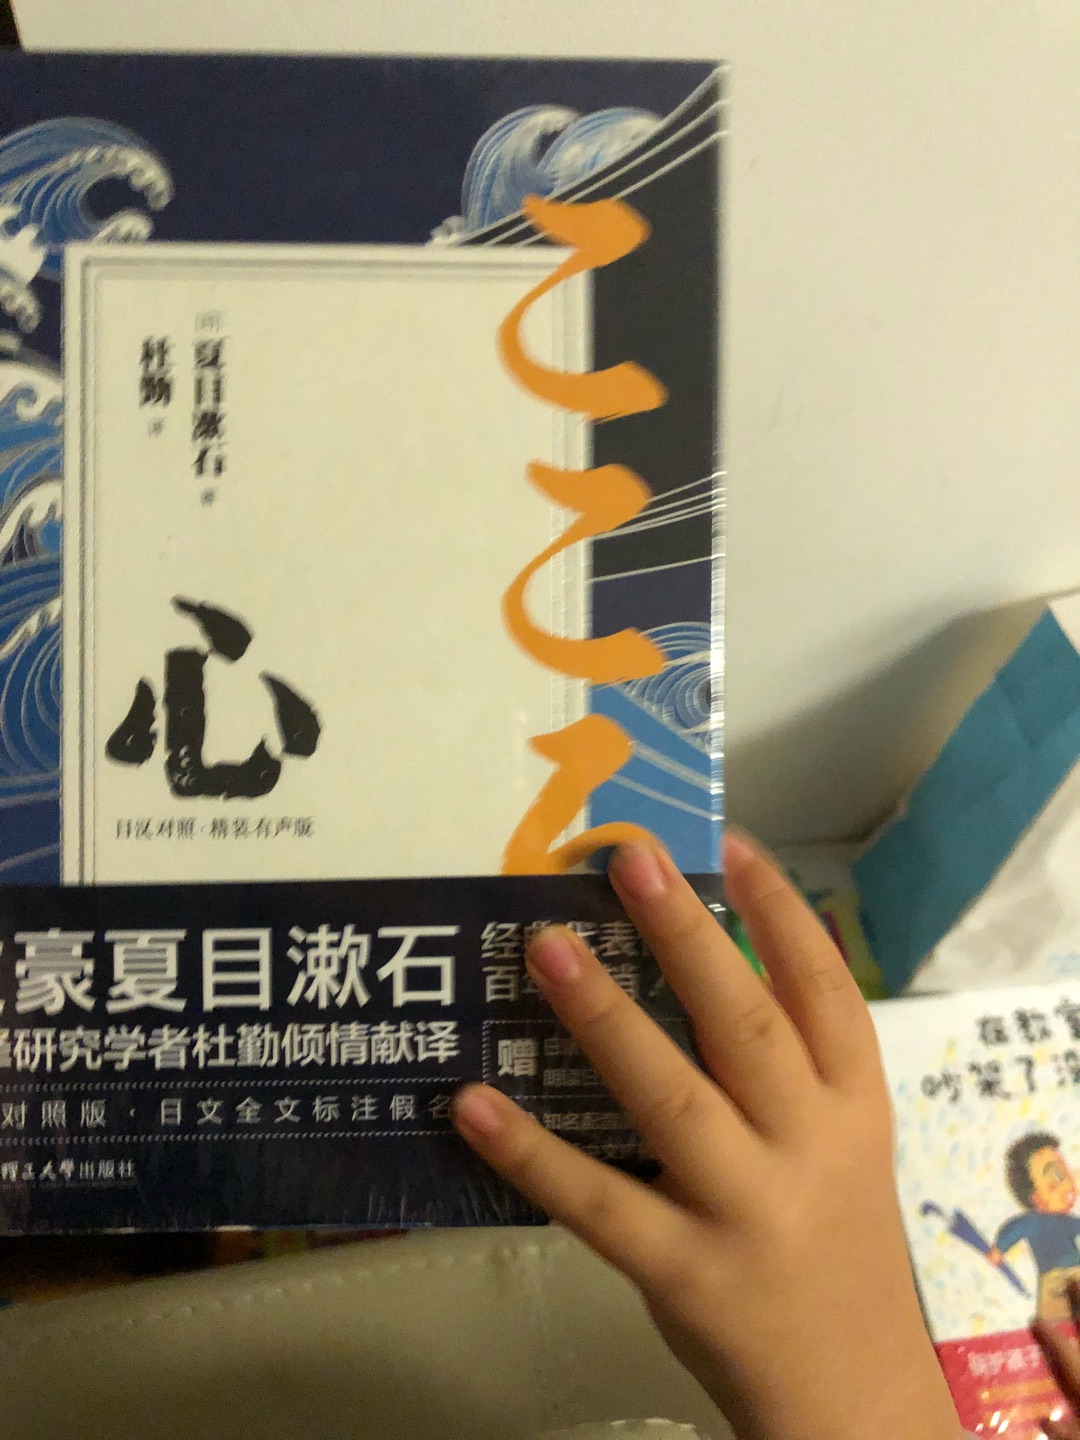 好久没看日语书了 这次买的对照版看一下 哈哈哈估计忘没有了 有活动买书真是划算到家了 太赞啦 买书就认准了